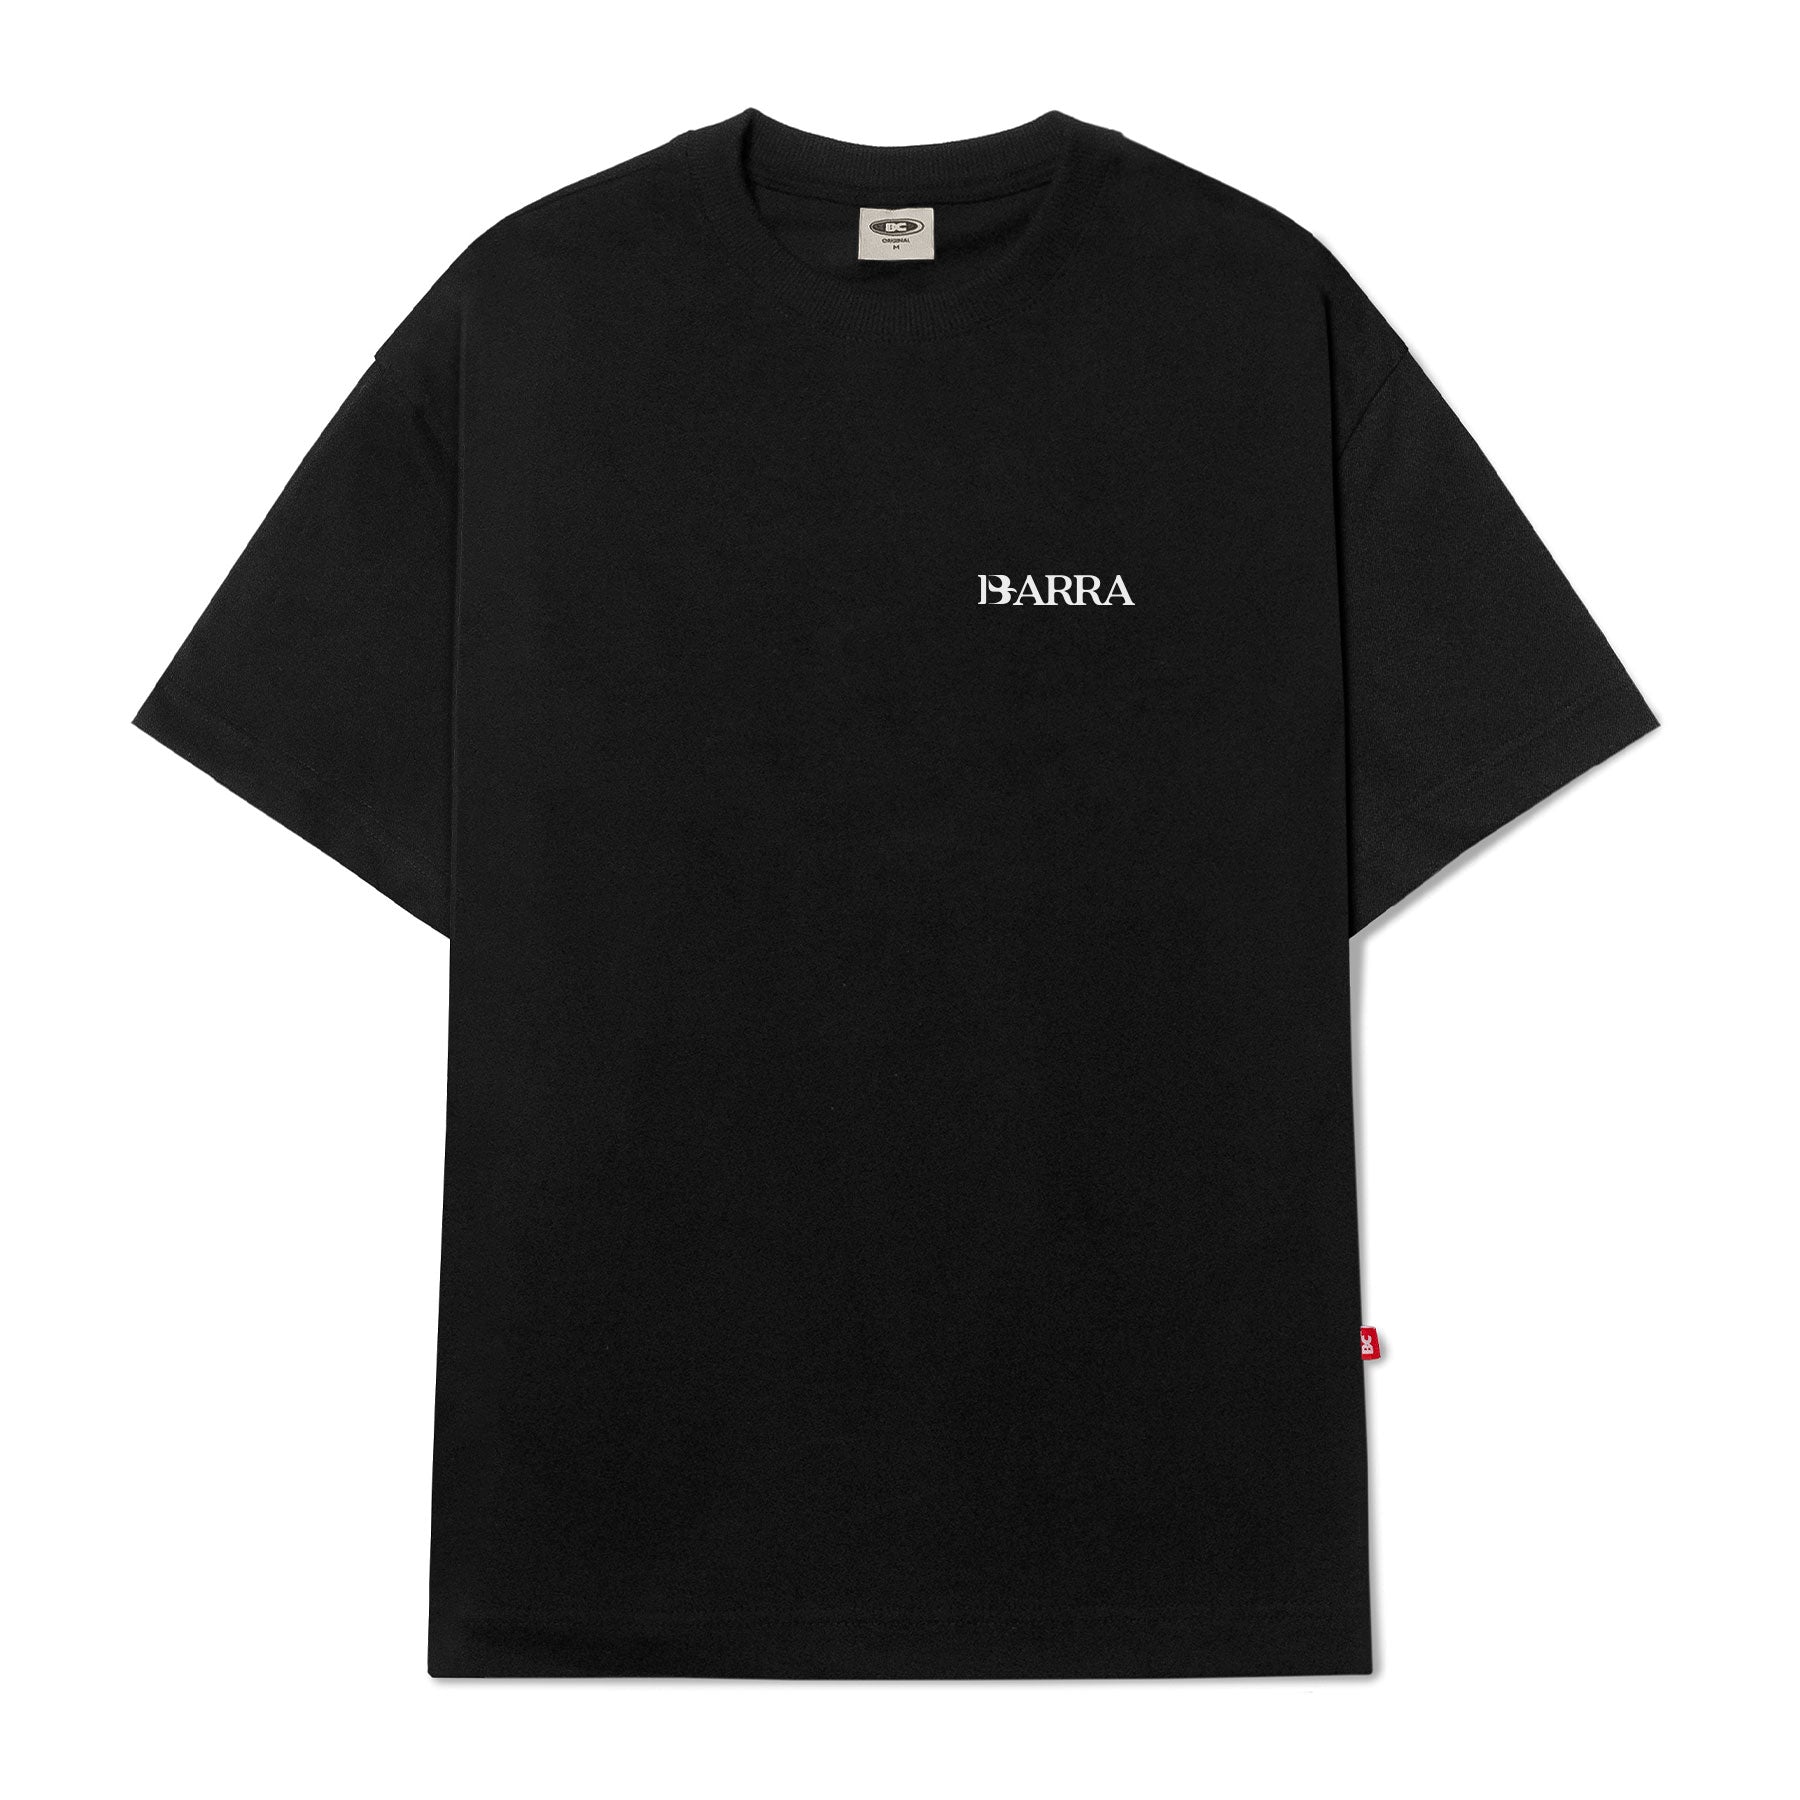 Barra Crew - Camiseta Exposição Preta